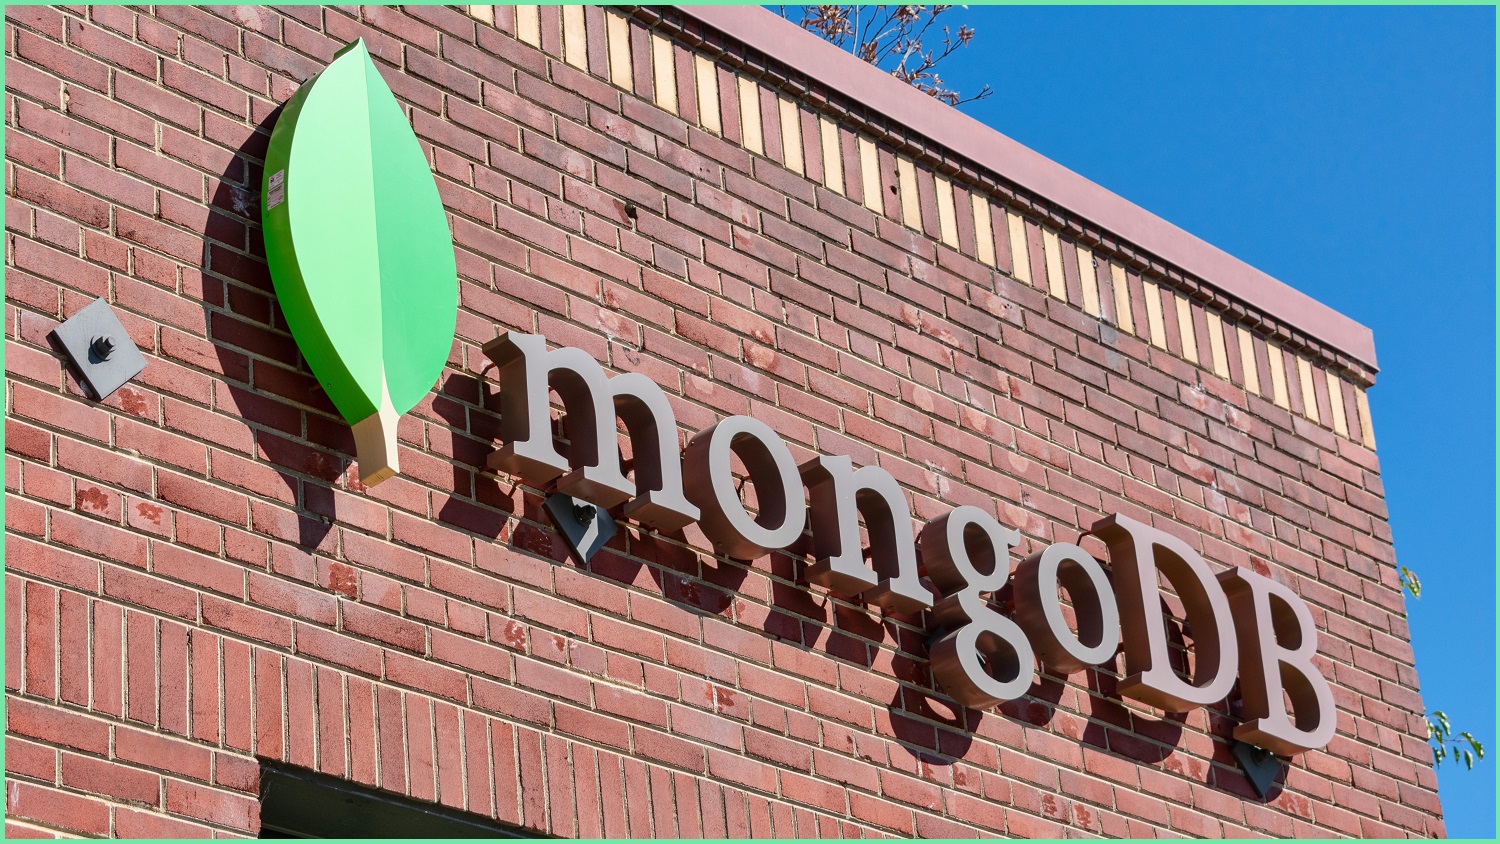 MongoDB signage